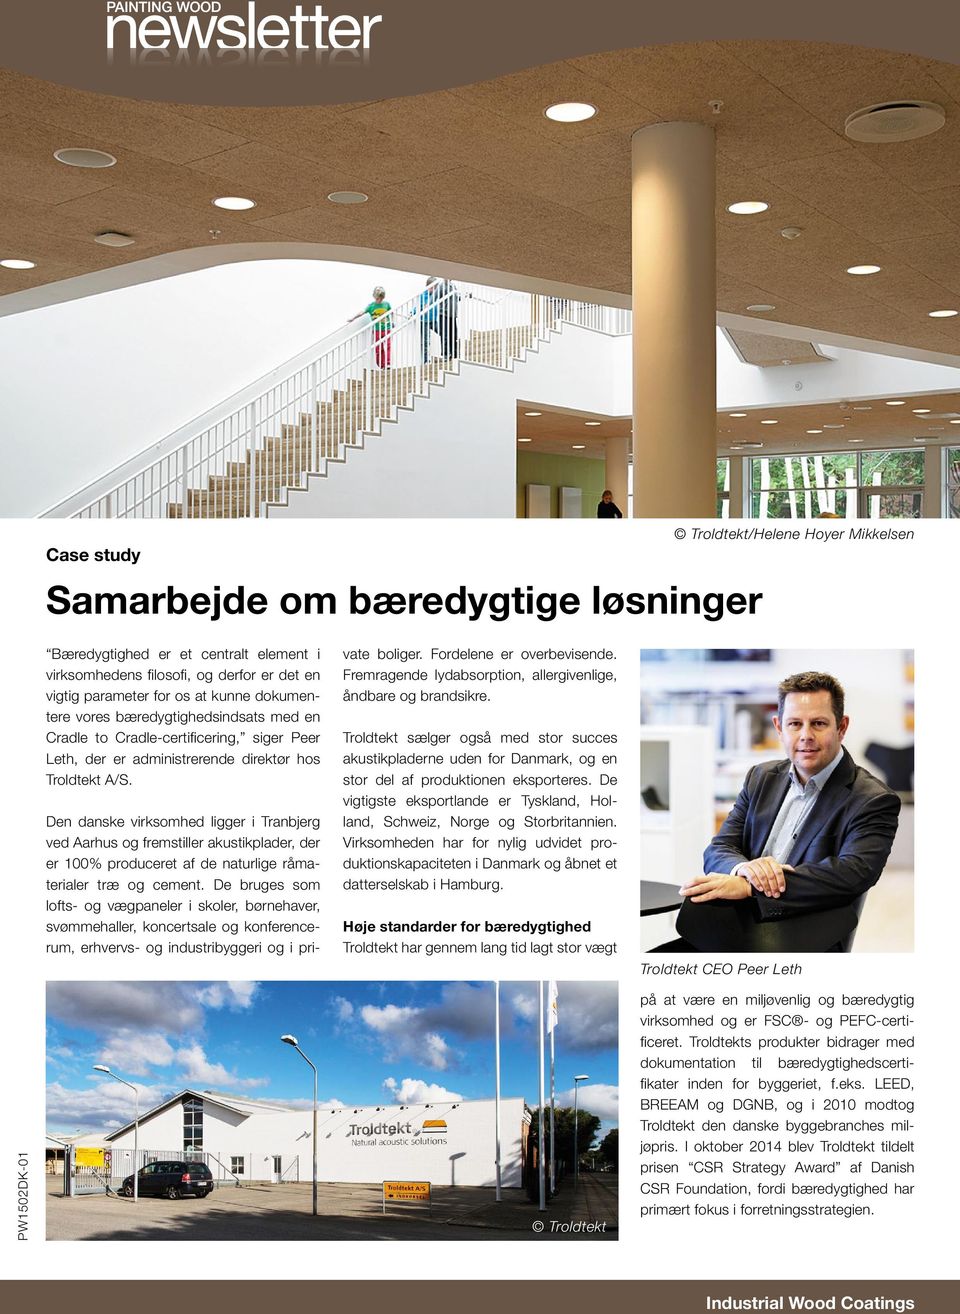 Den danske virksomhed ligger i Tranbjerg ved Aarhus og fremstiller akustikplader, der er 100% produceret af de naturlige råmaterialer træ og cement.